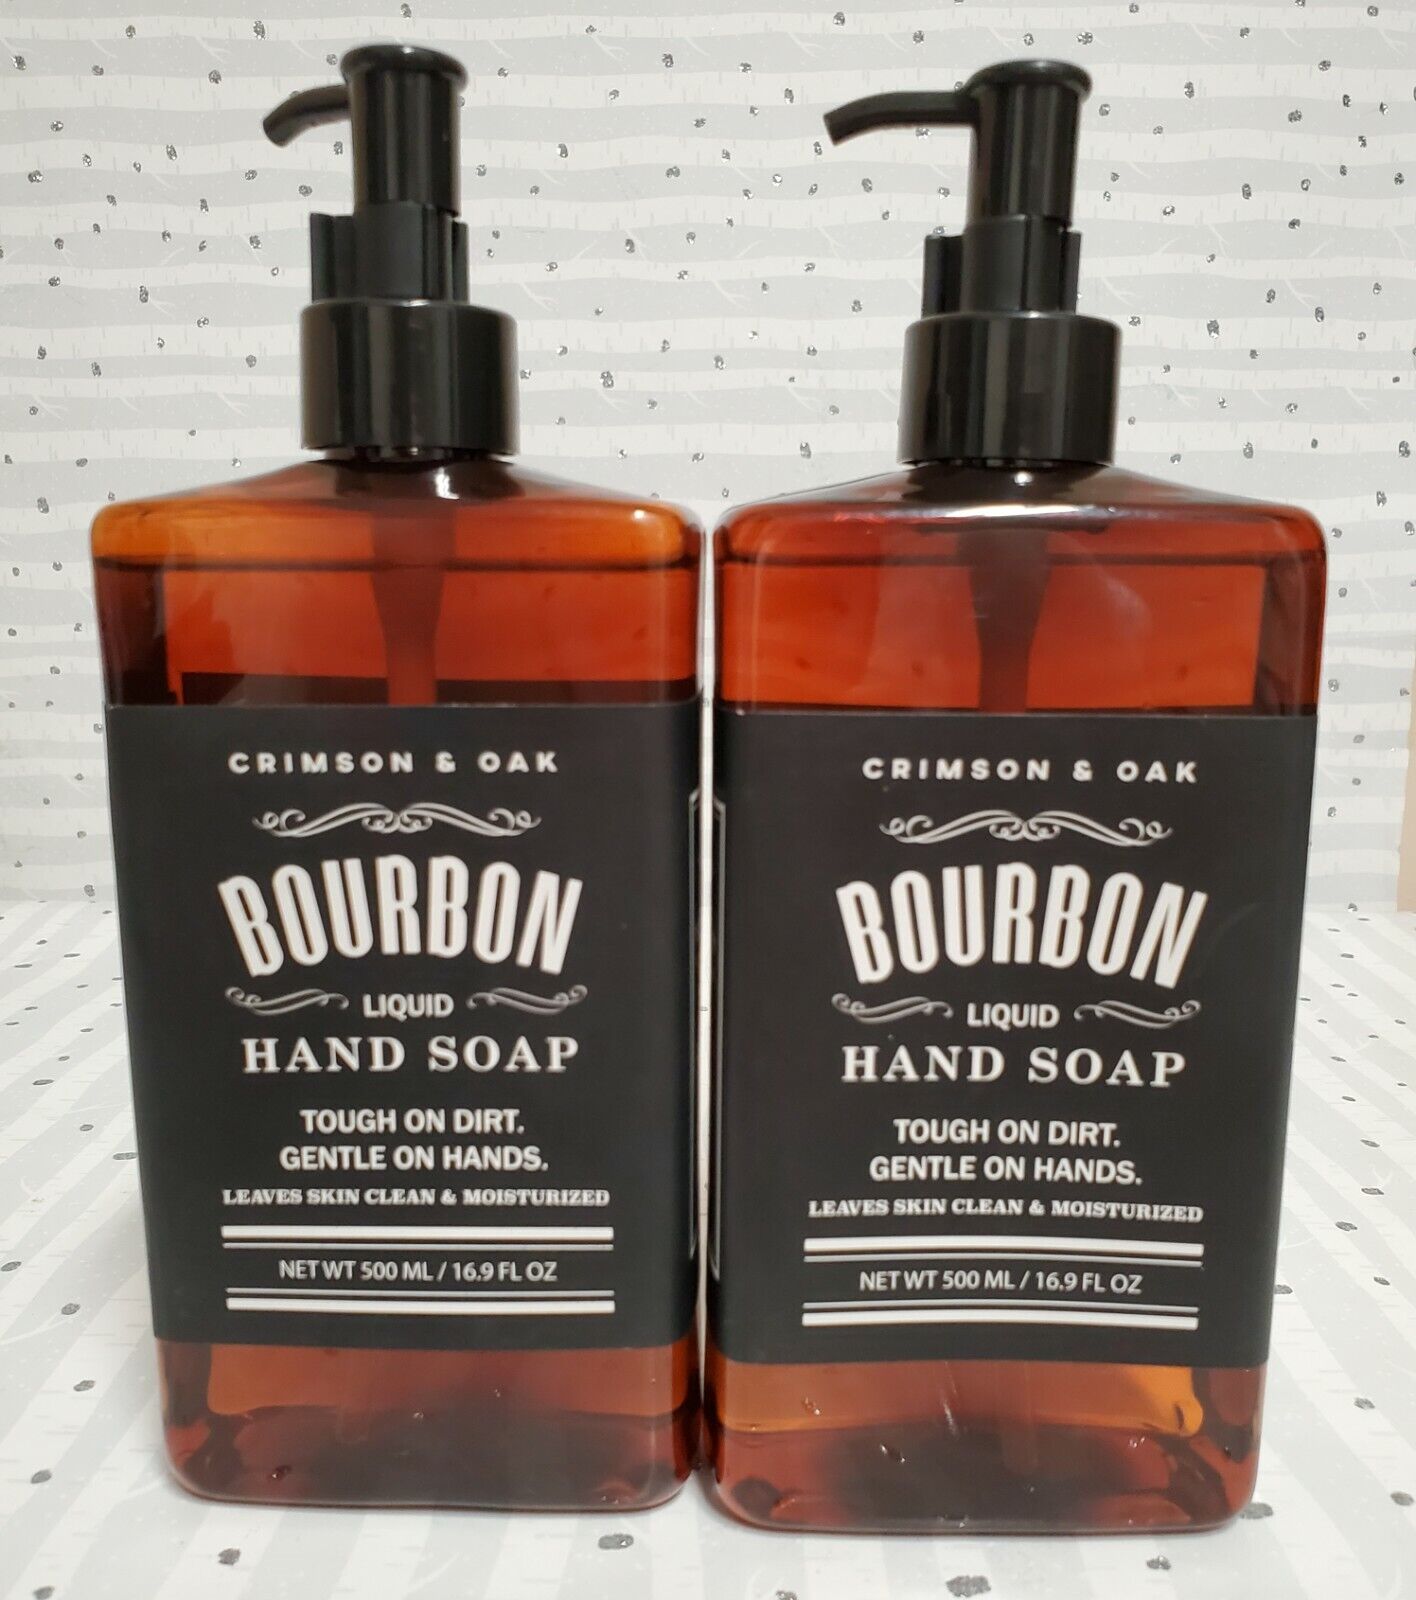 2 X Crimson & Oak Bourbon Liquid Hand Soap for Men 16.9 fl oz each Exp 09/2022